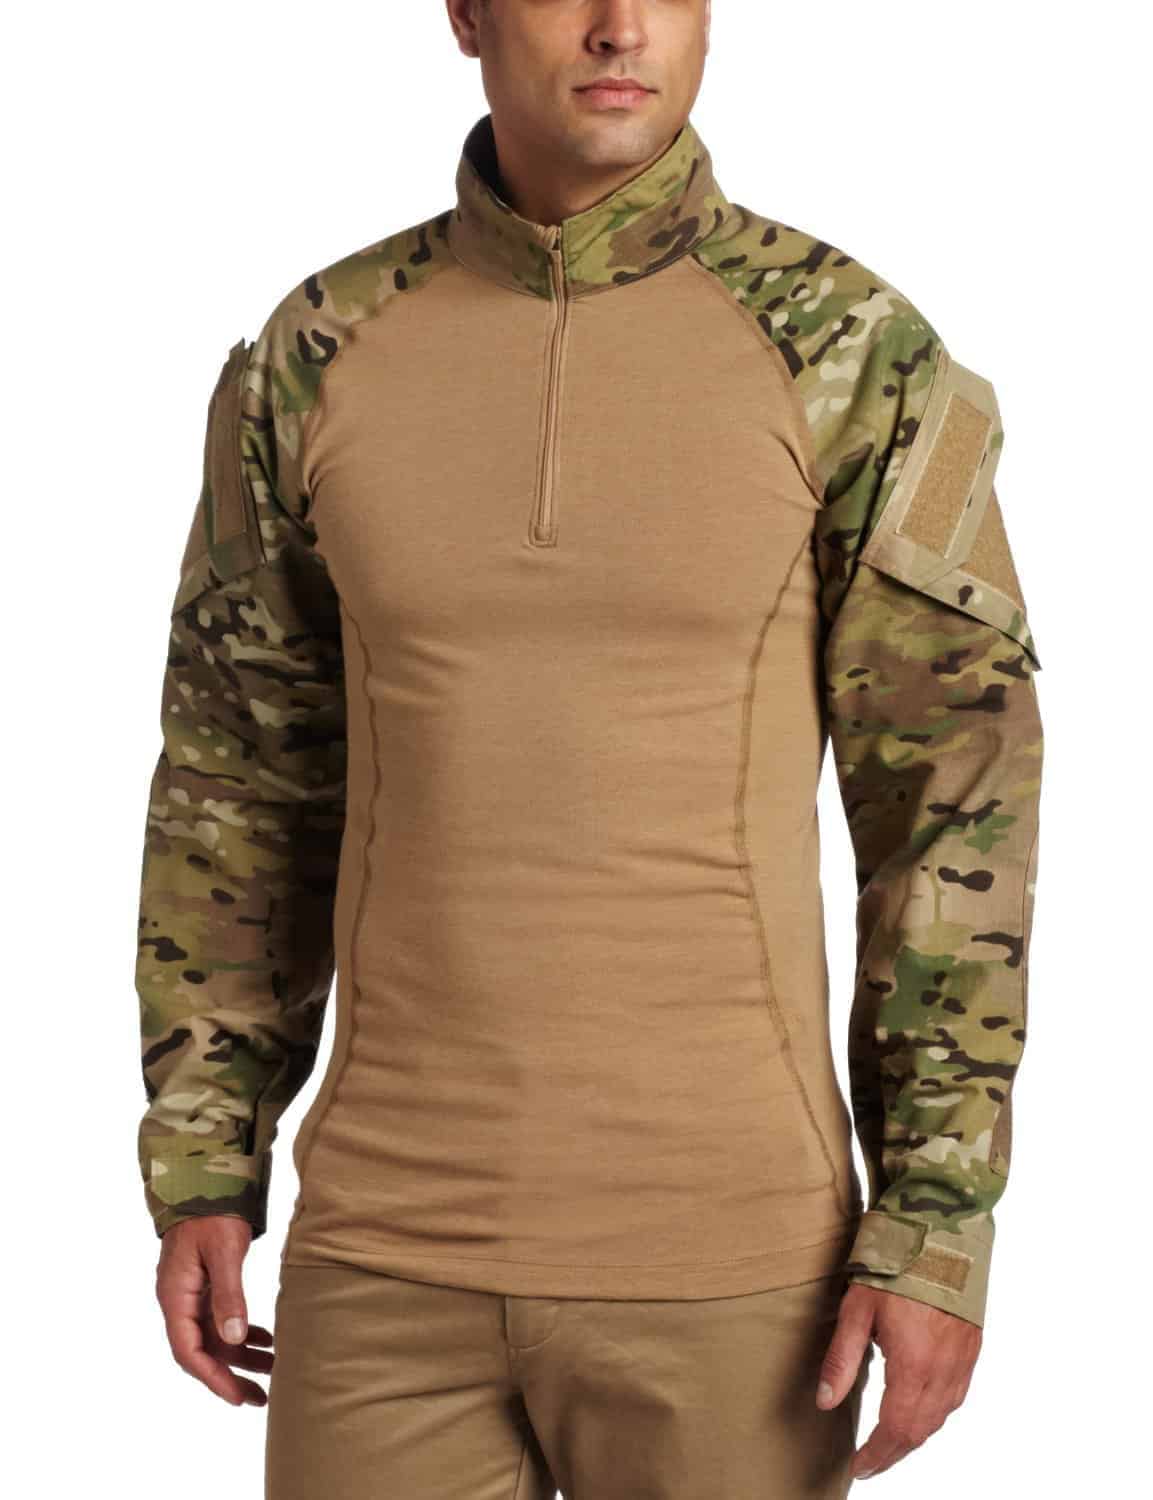 Форма 11 военному. 511 Tactical тактическая рубашка. 5.11 Тактикал кофта. Одежда 5.11 Tactical. 5.11 Tactical костюм.